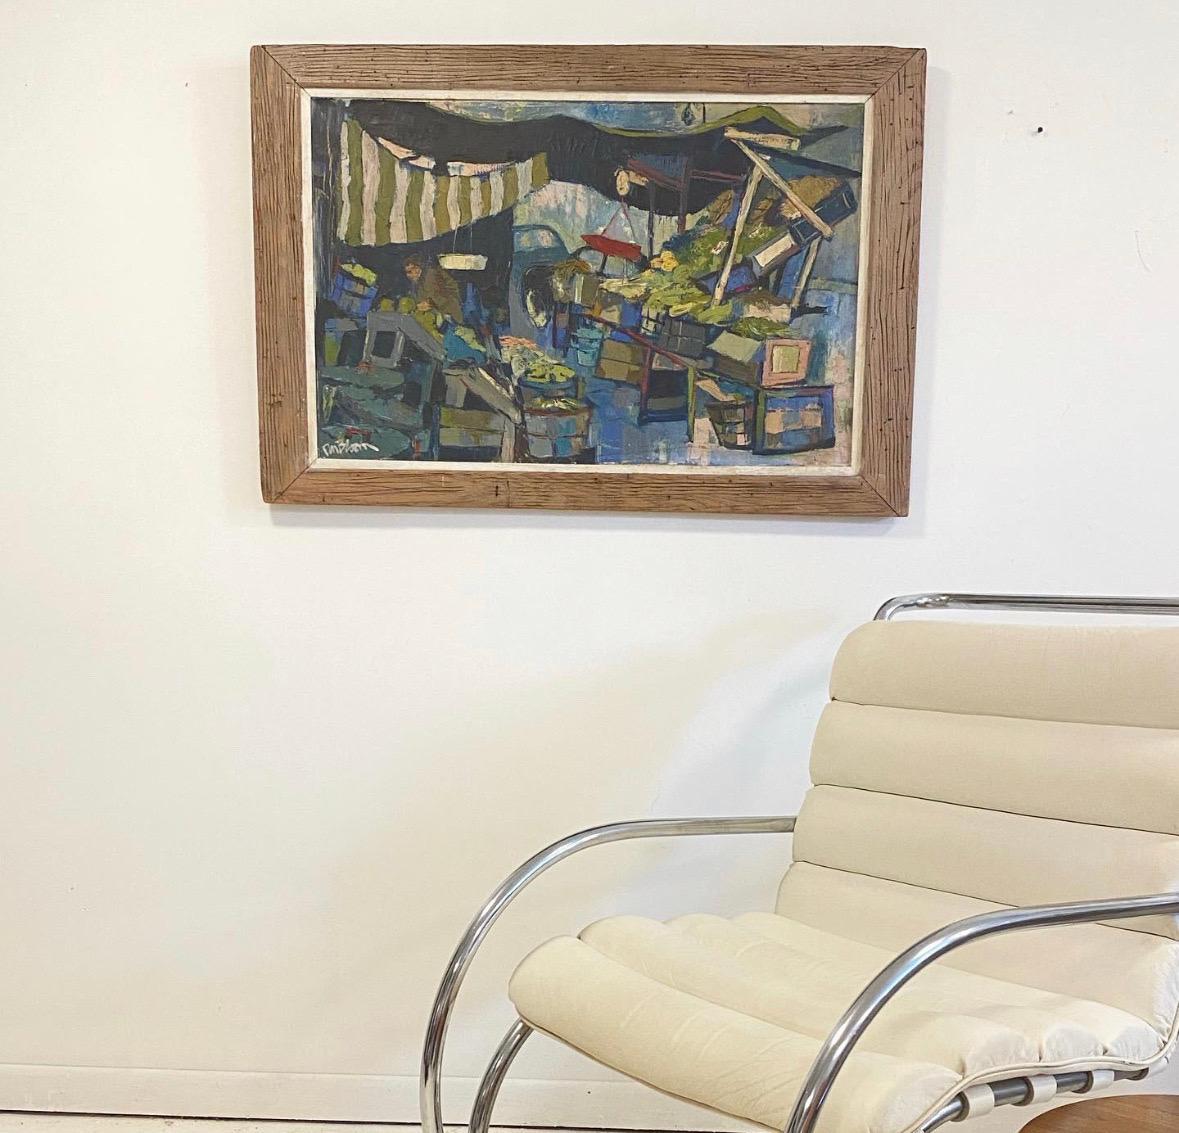 Don Bloom (geb. 1932-2016) großes Ölgemälde, datiert 1957. Im Jahr 1960 erhielt er das Guggenheim-Stipendium für kreative Malerei, im selben Jahr wurde sein Werk im Whitney Annual gezeigt. Er hat sein ganzes Leben lang praktiziert und war auch als